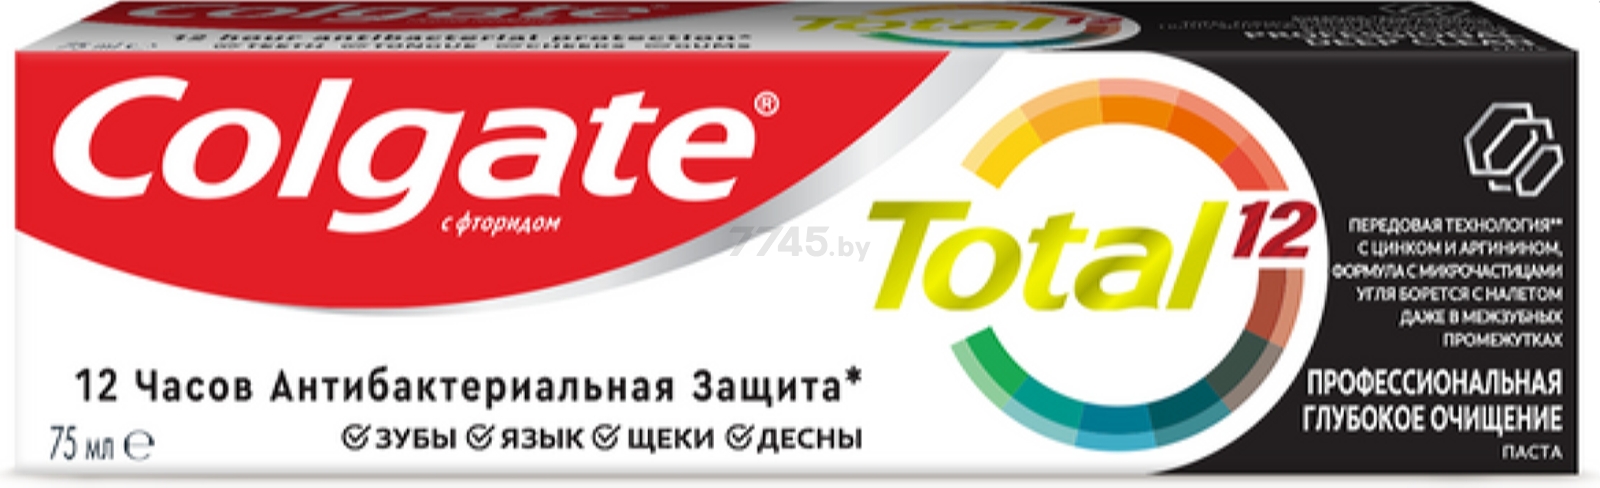 Зубная паста COLGATE Total 12 Профессиональная Глубокое Очищение 75 мл (6920354827051) - Фото 2